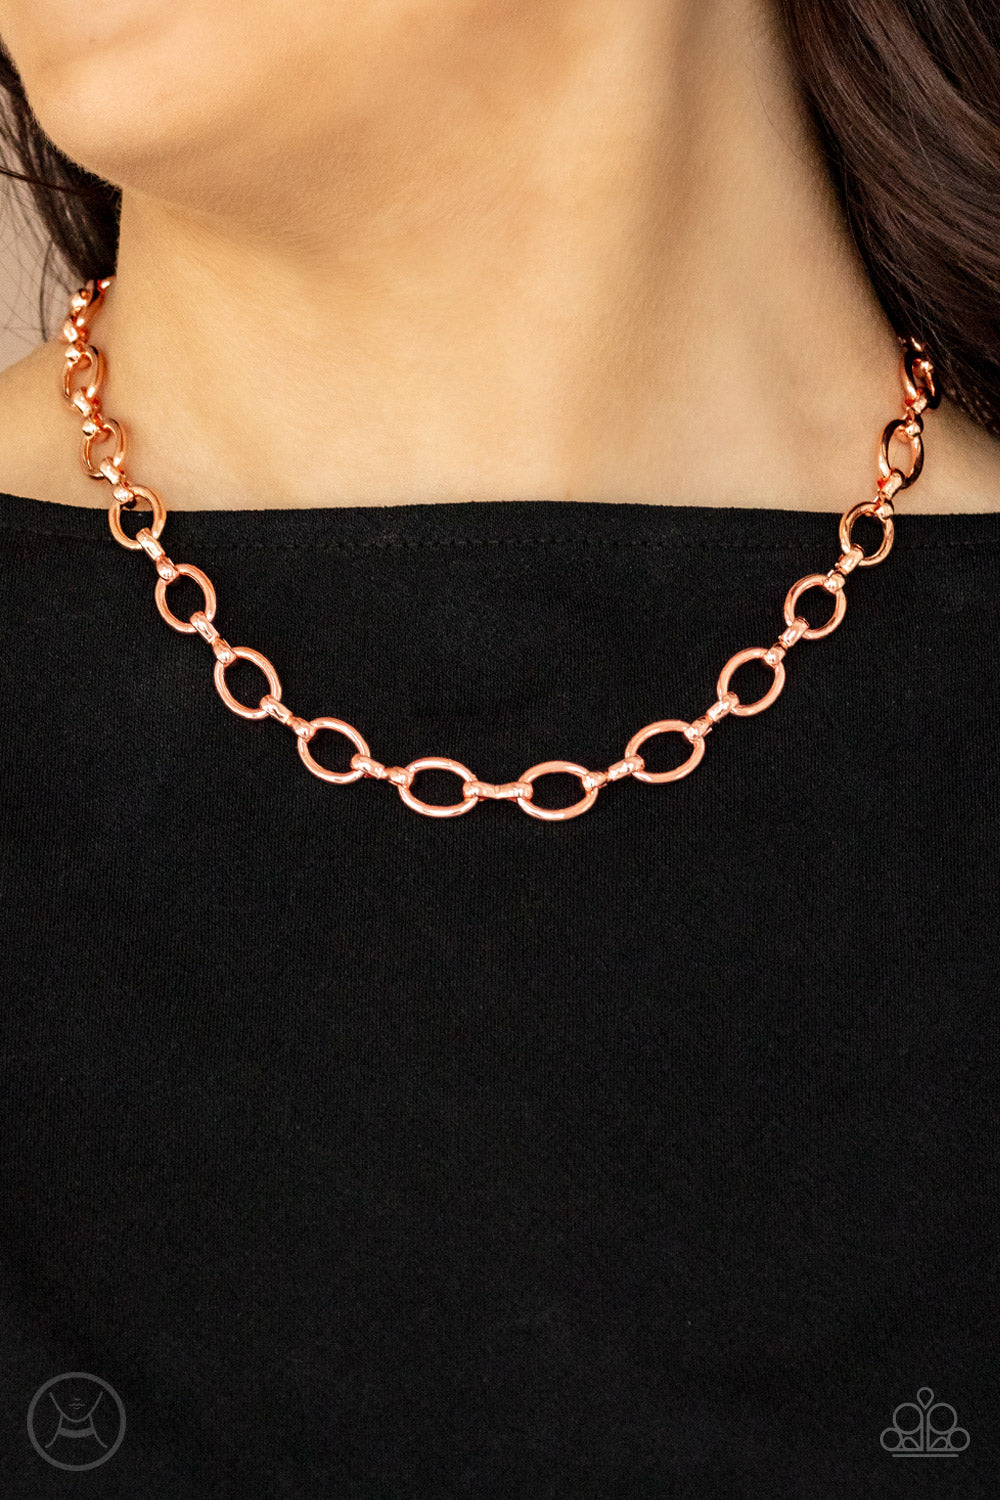 Craveable Couture - Blush Copper